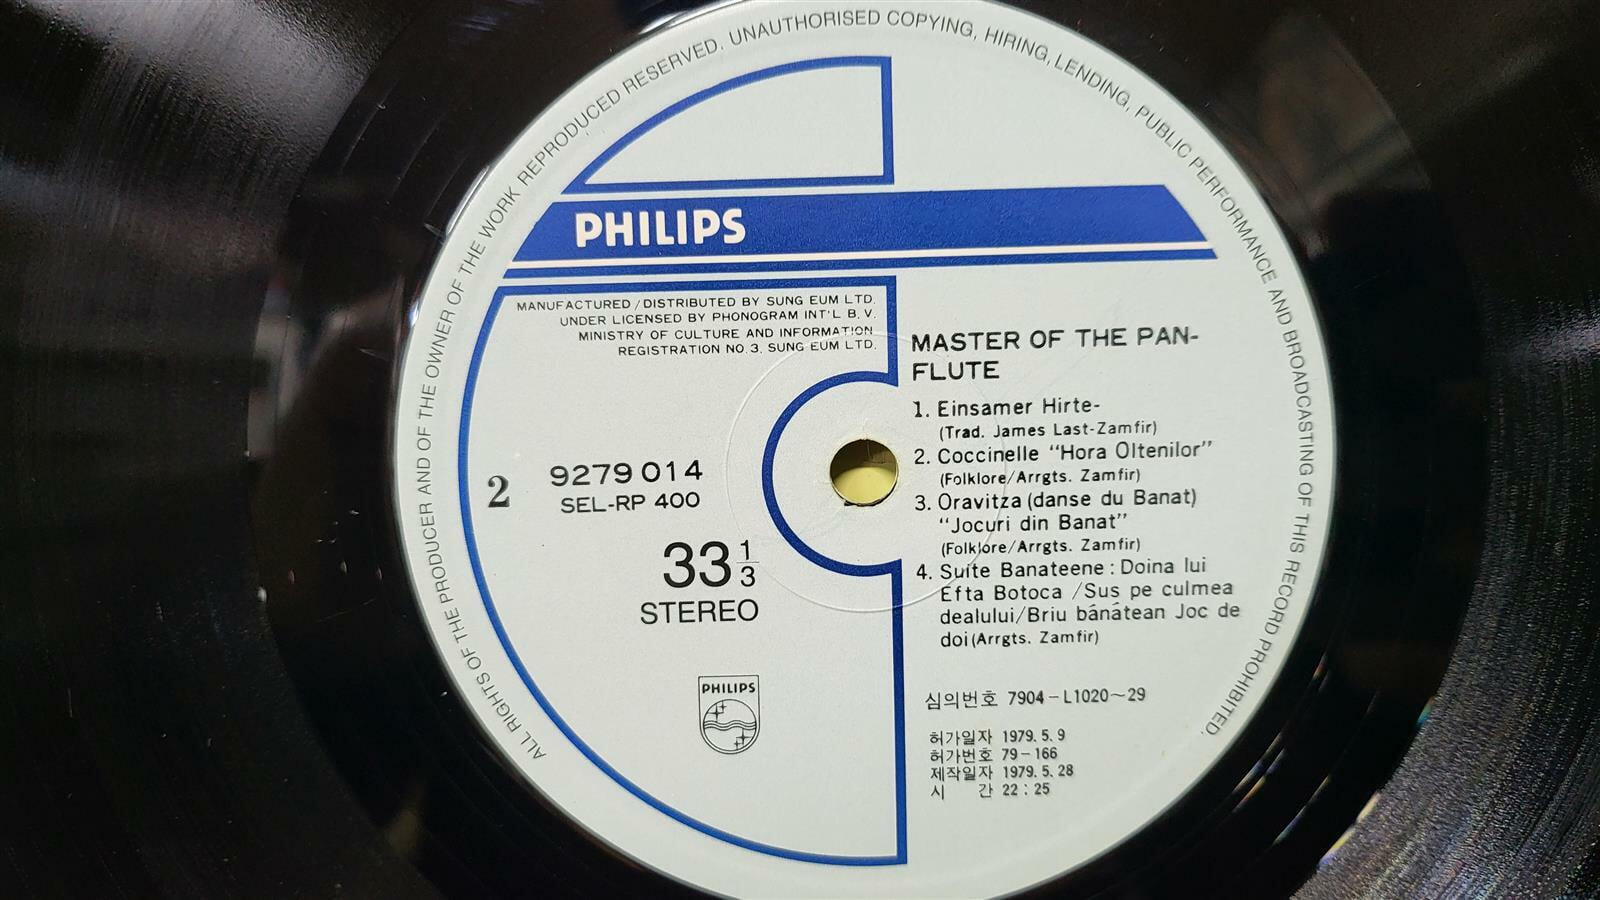 [LP] Master of the Pan Flute - Einsamer Hirte